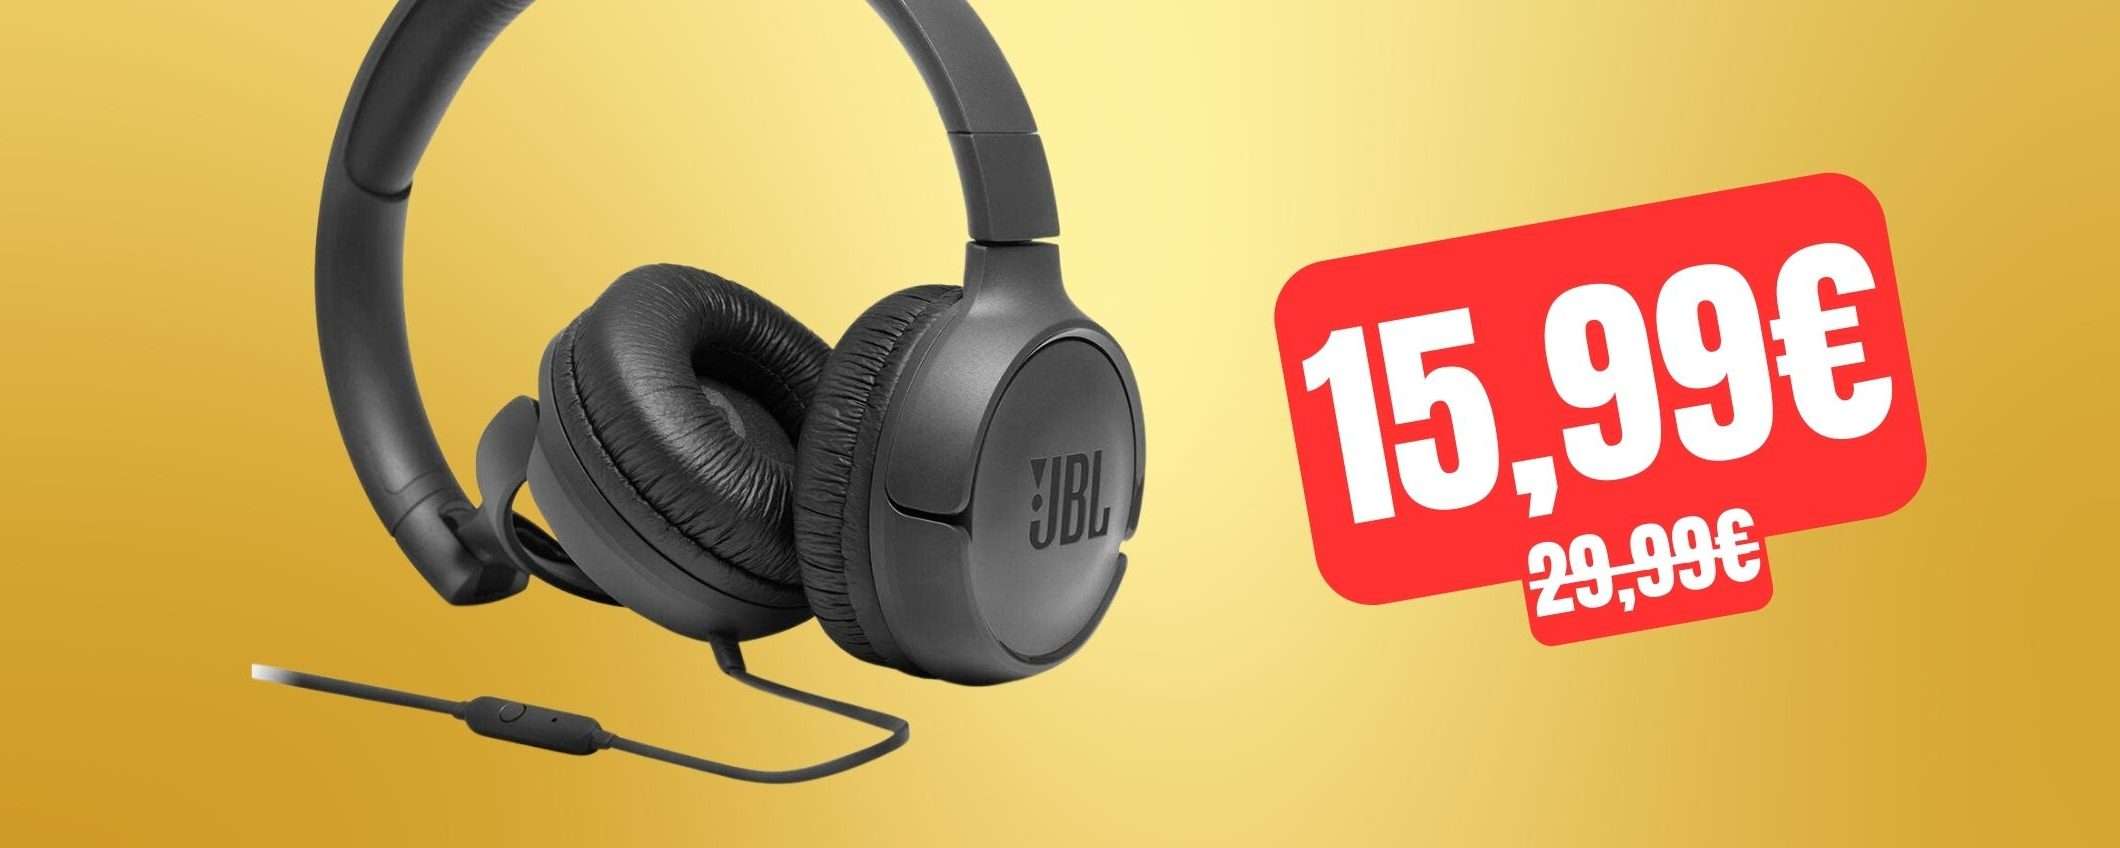 Cuffie JBL Tune 500: prezzo SHOCK su Amazon, tue a soli 15,99€